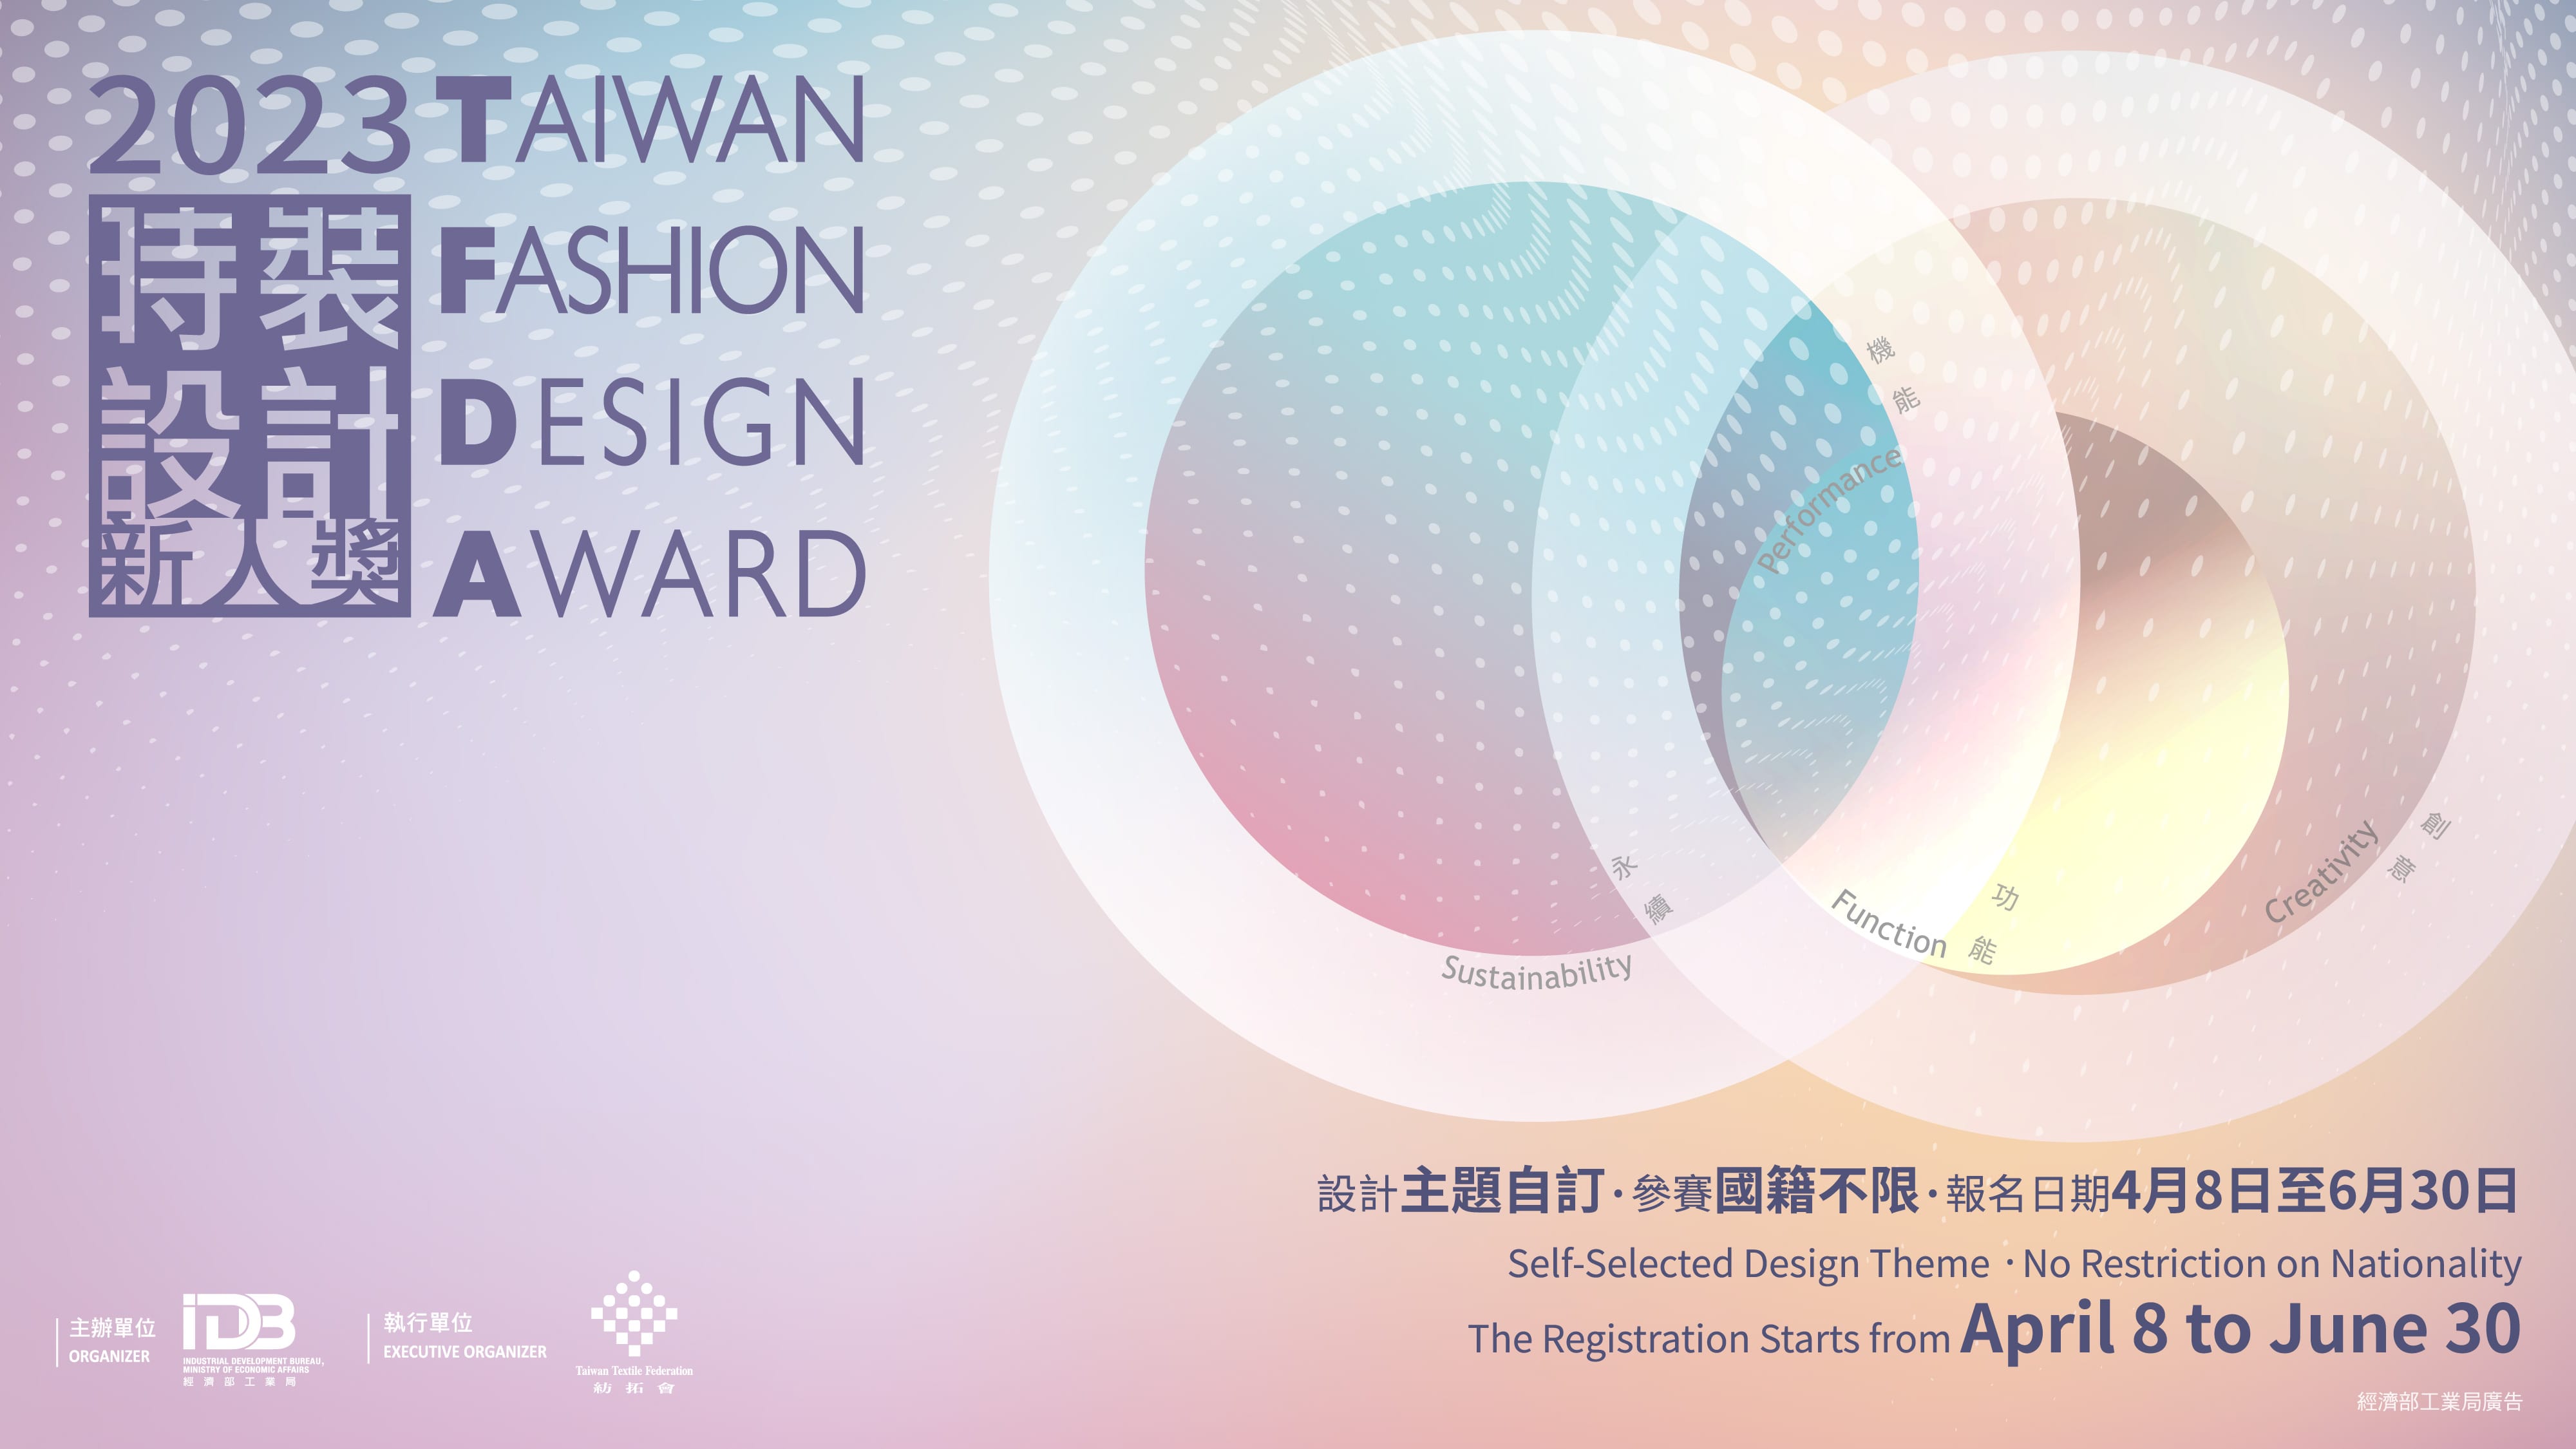 -------Taiwan Fashion Design Award-------